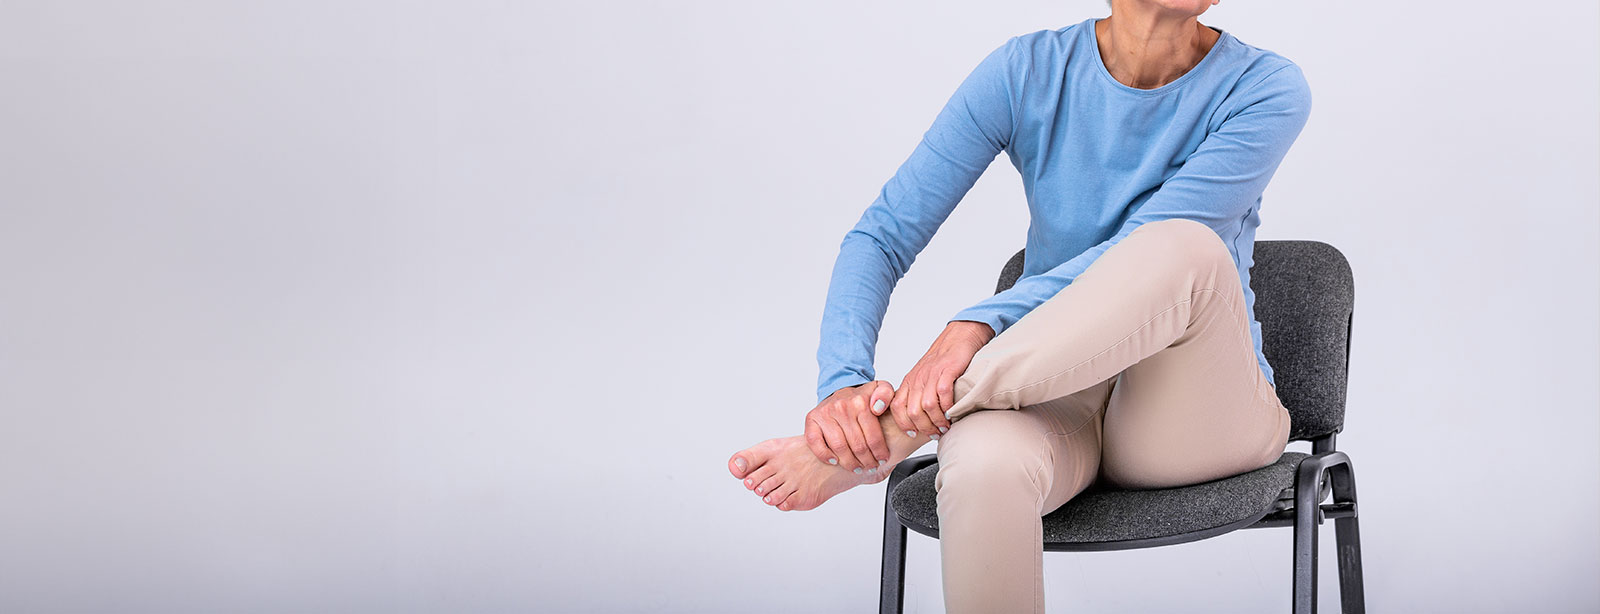 Perché ti fanno male le gambe quando ti alzi dopo essere stato seduto?